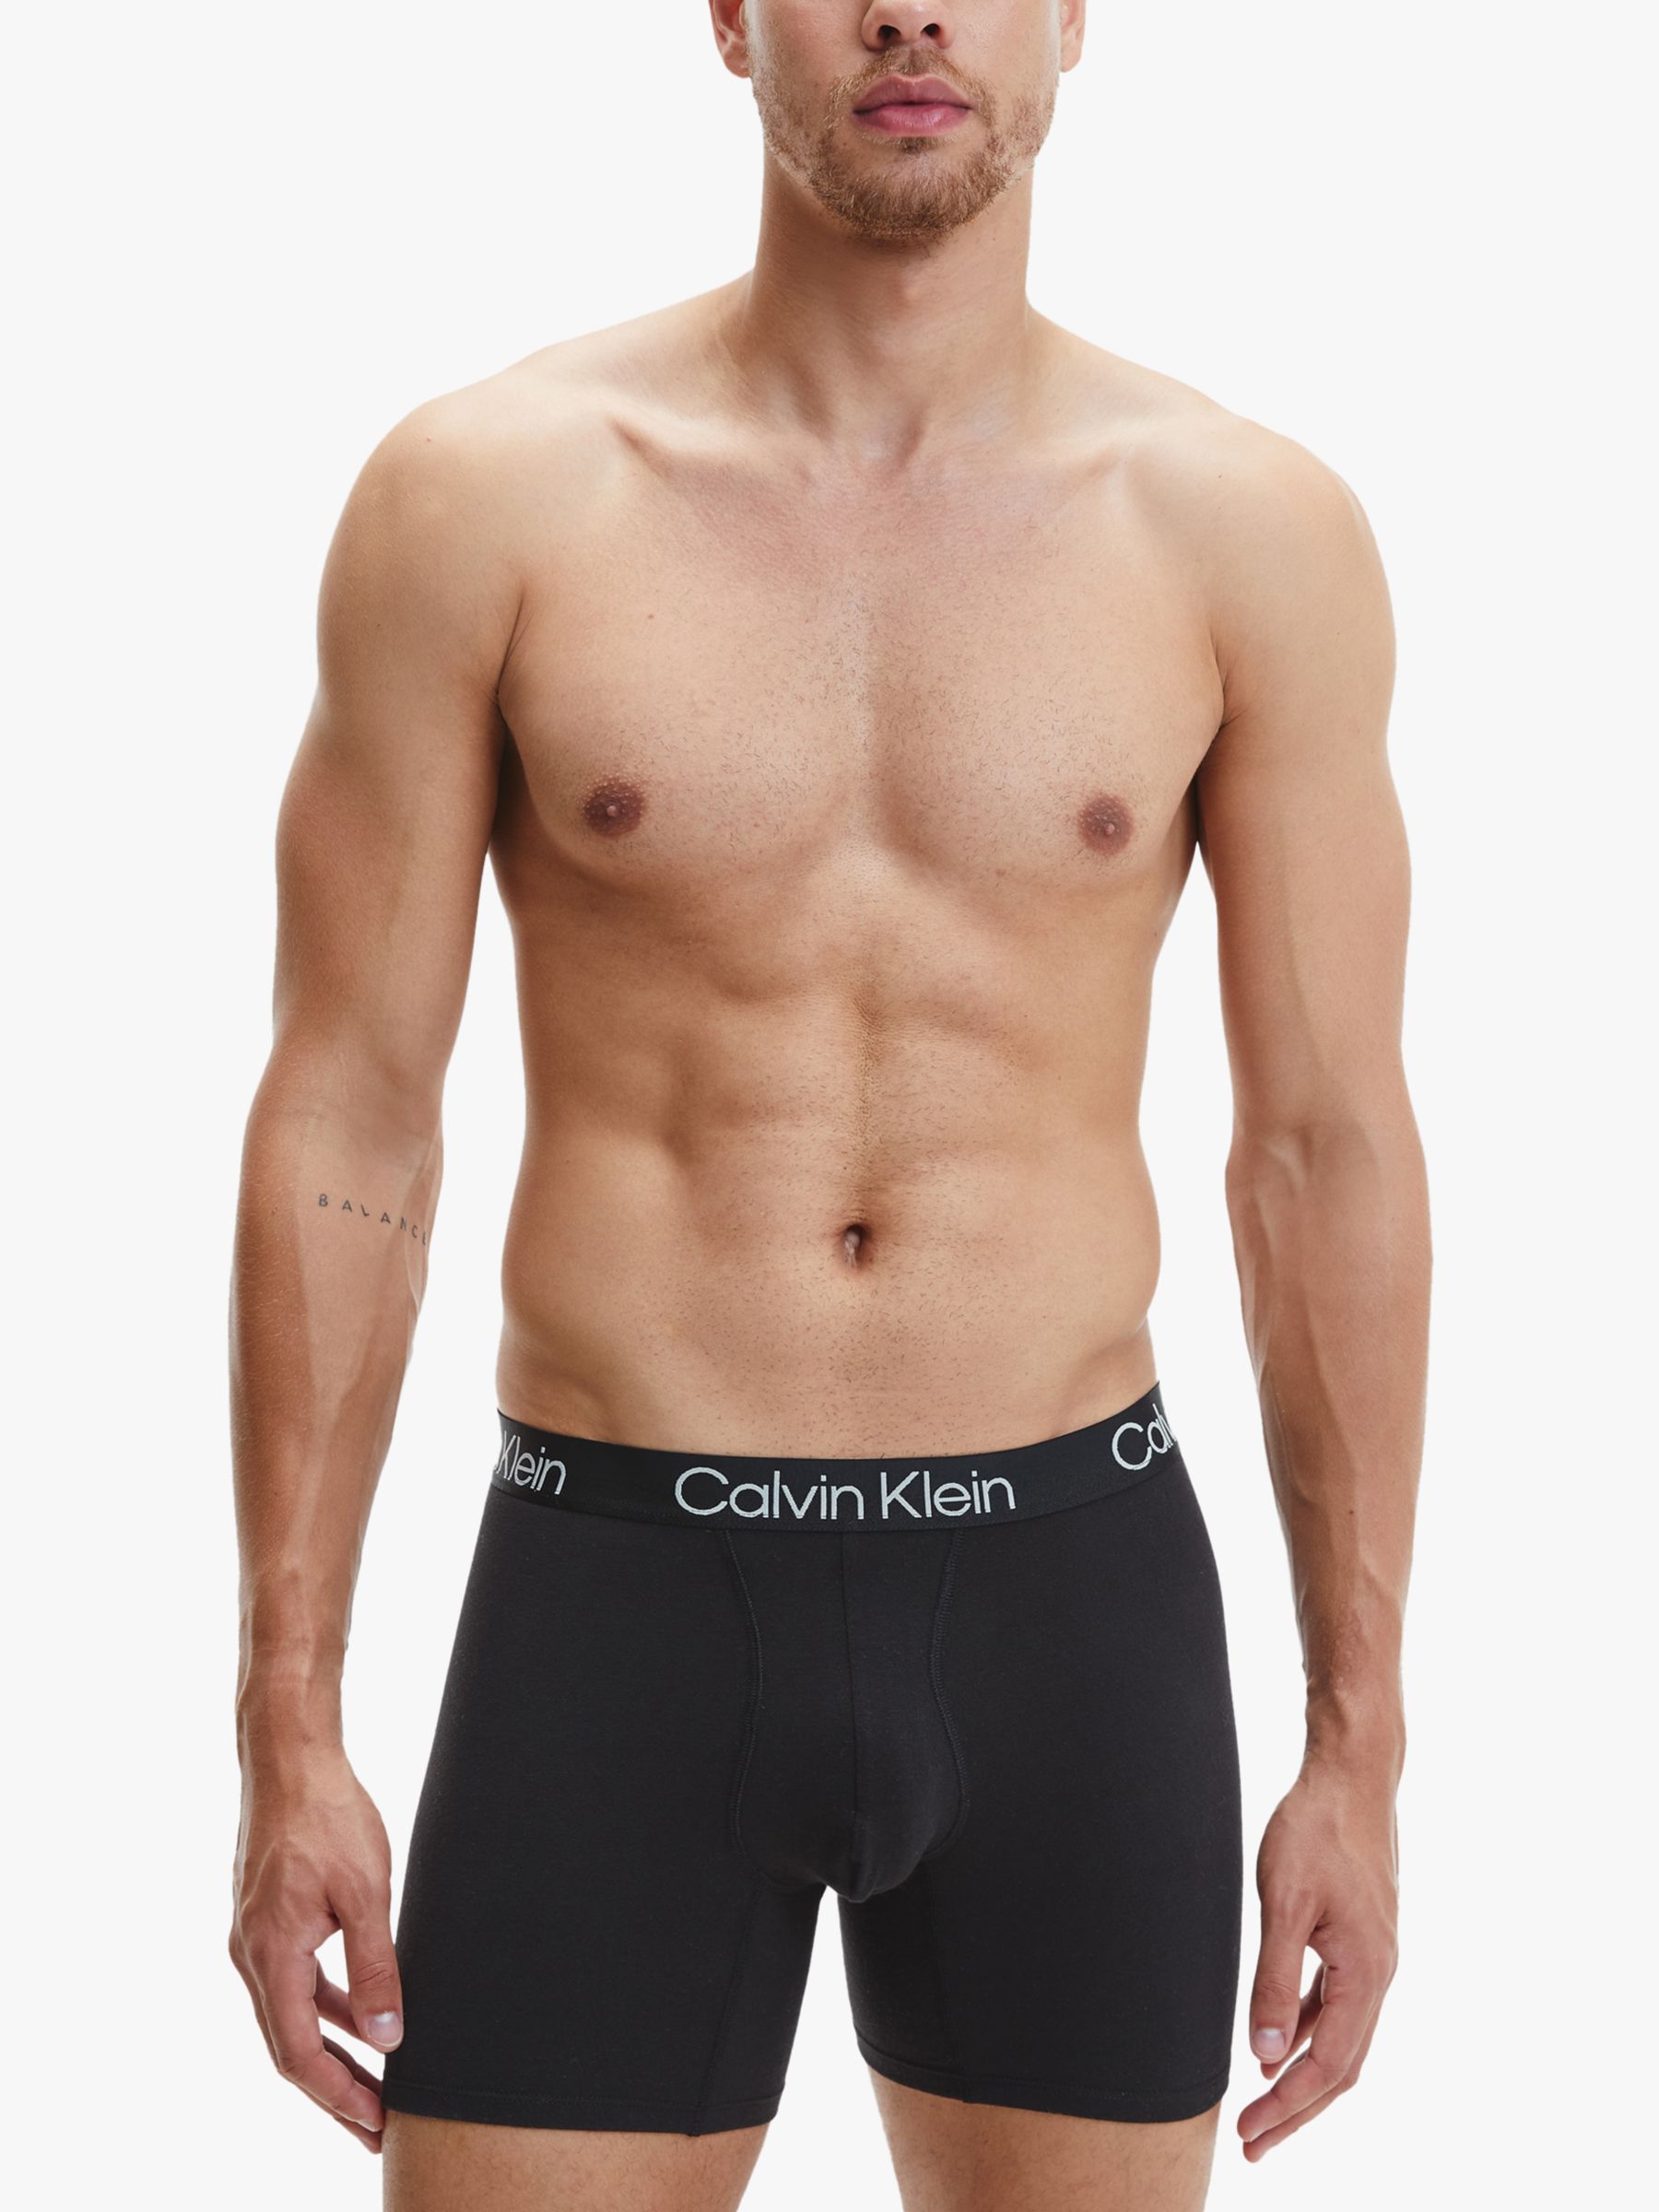 Calvin Klein Underwear Gift Set